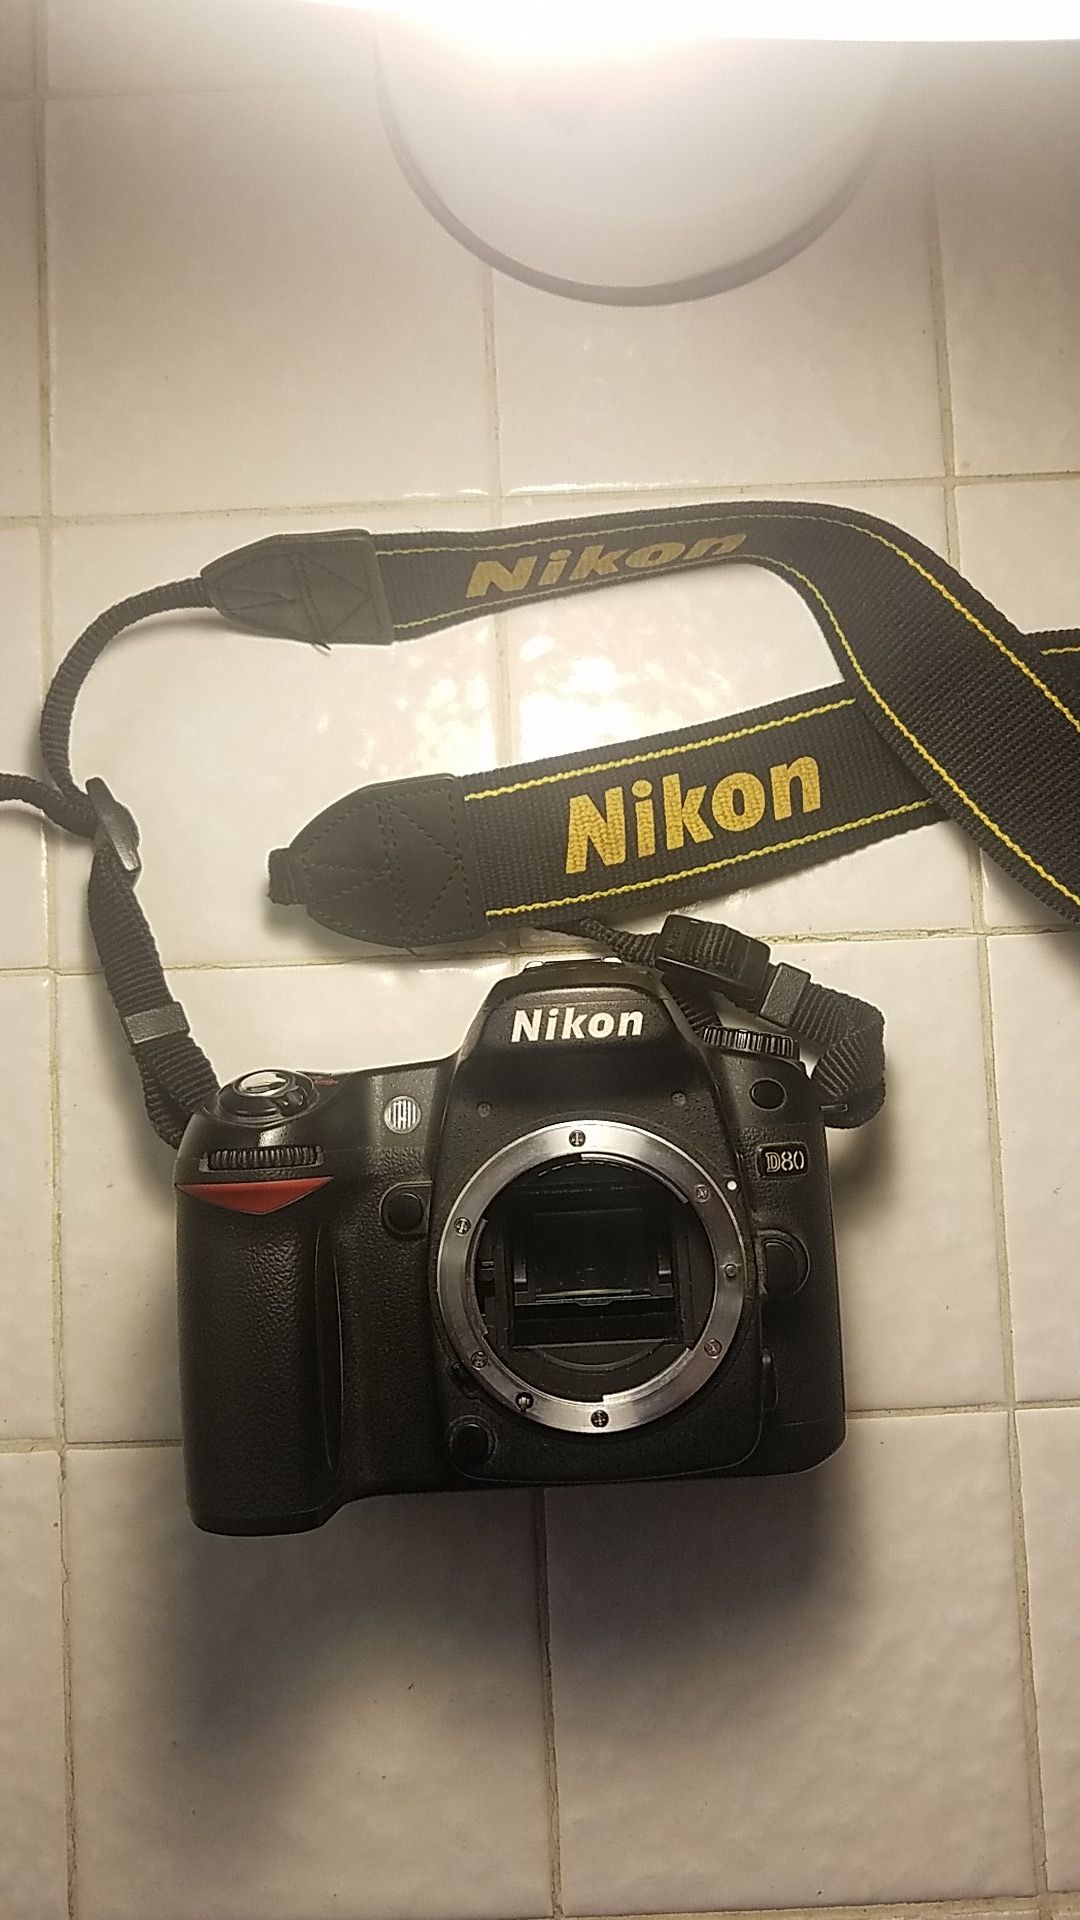 Nikon camera model #D80